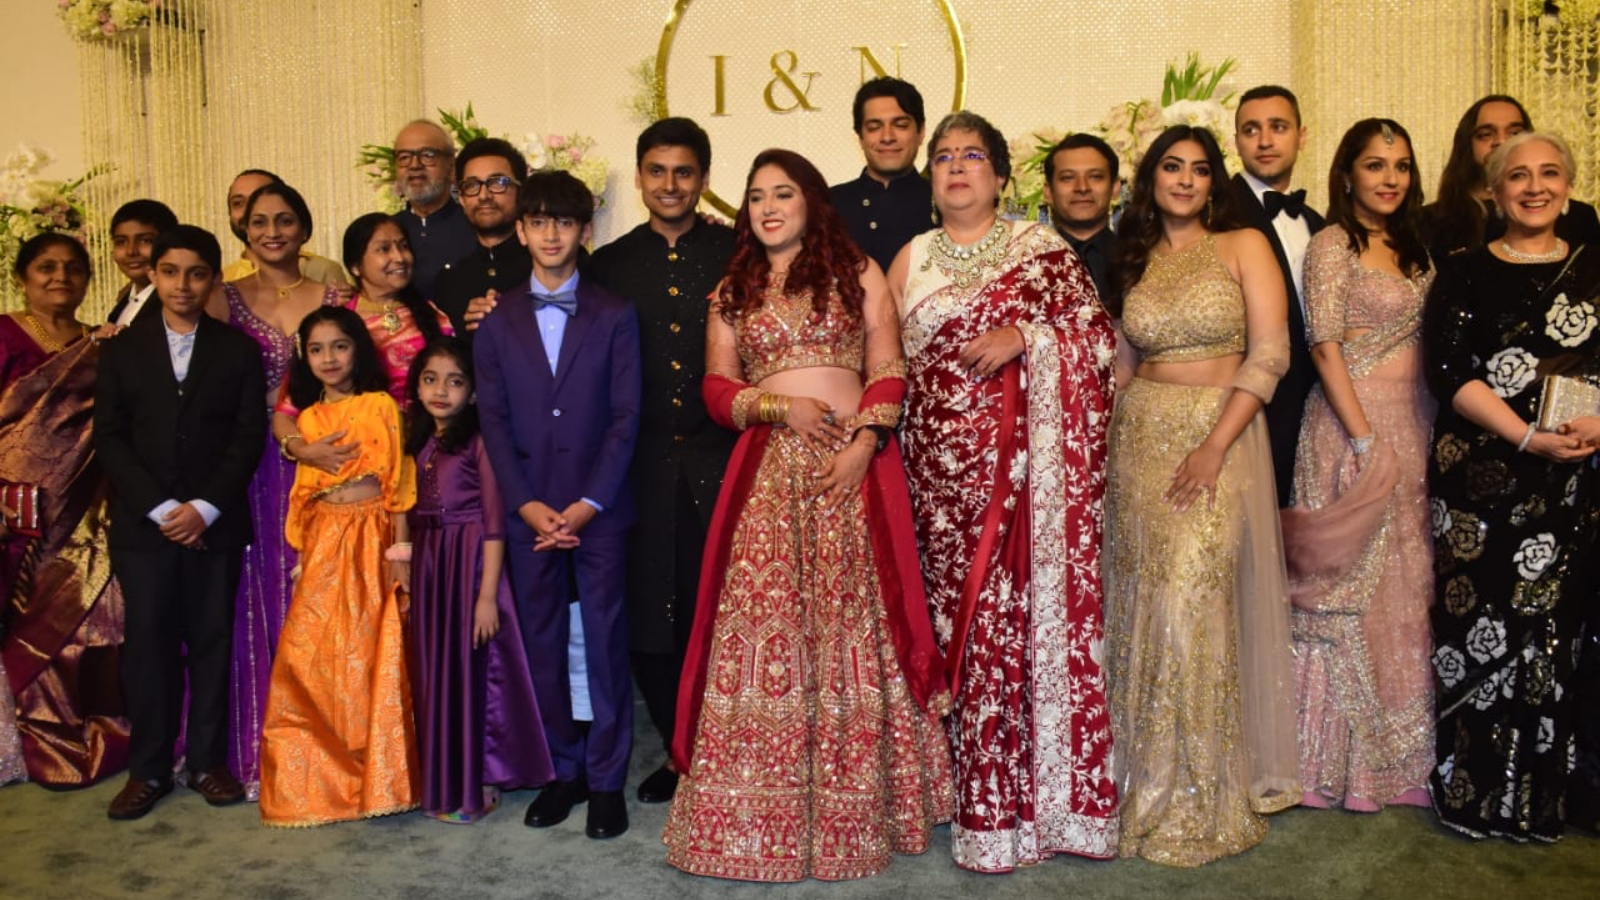 Four Seasons Hotel Orlando Indian and Muslim wedding